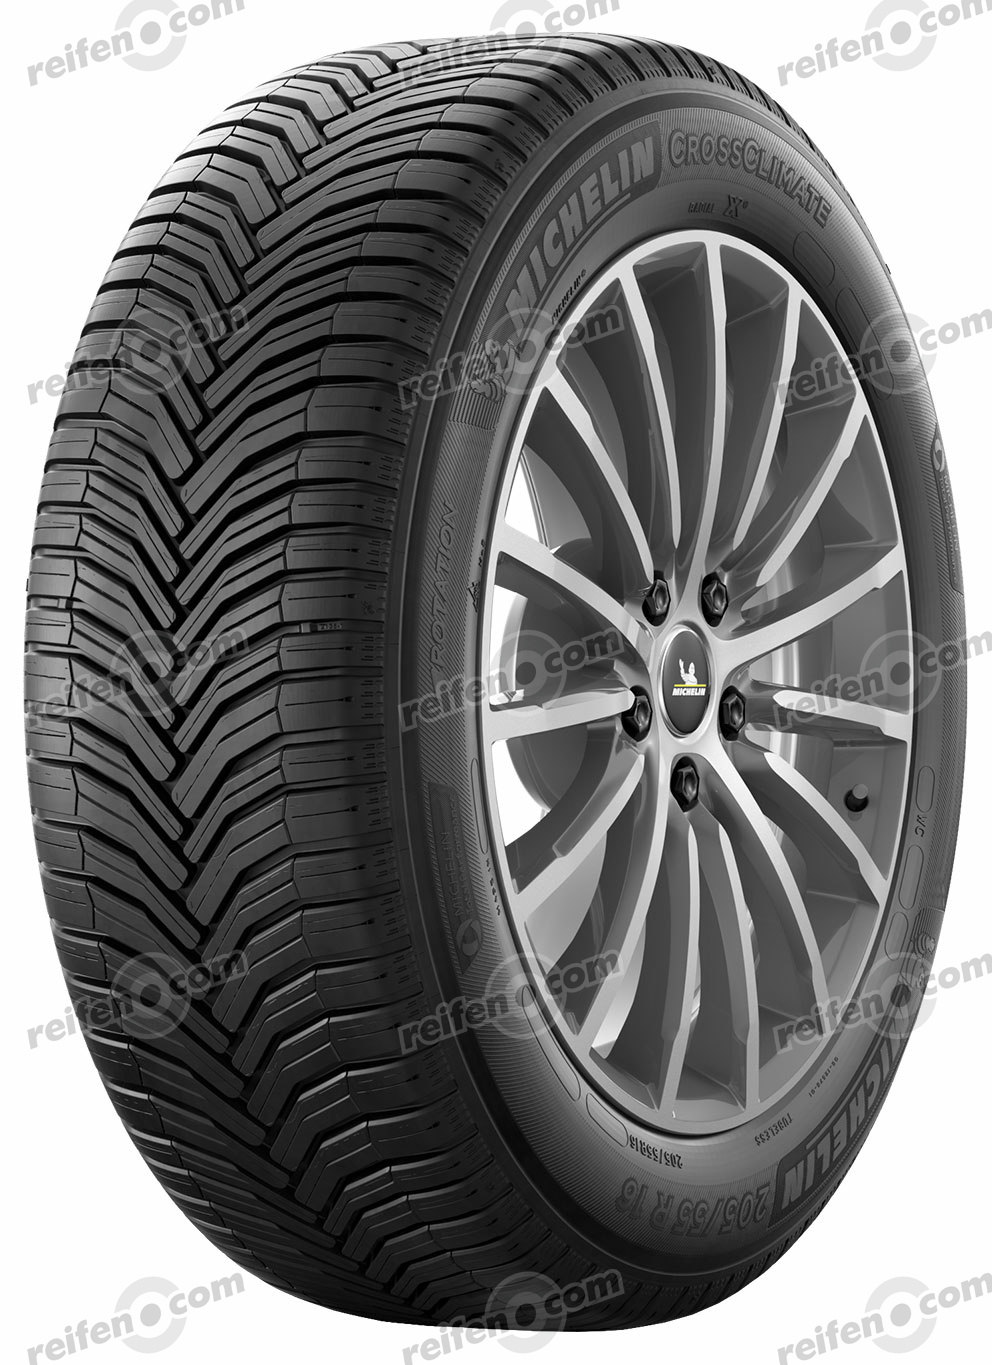 Michelin Reifen Gunstig Online Bestellen Reifen Com